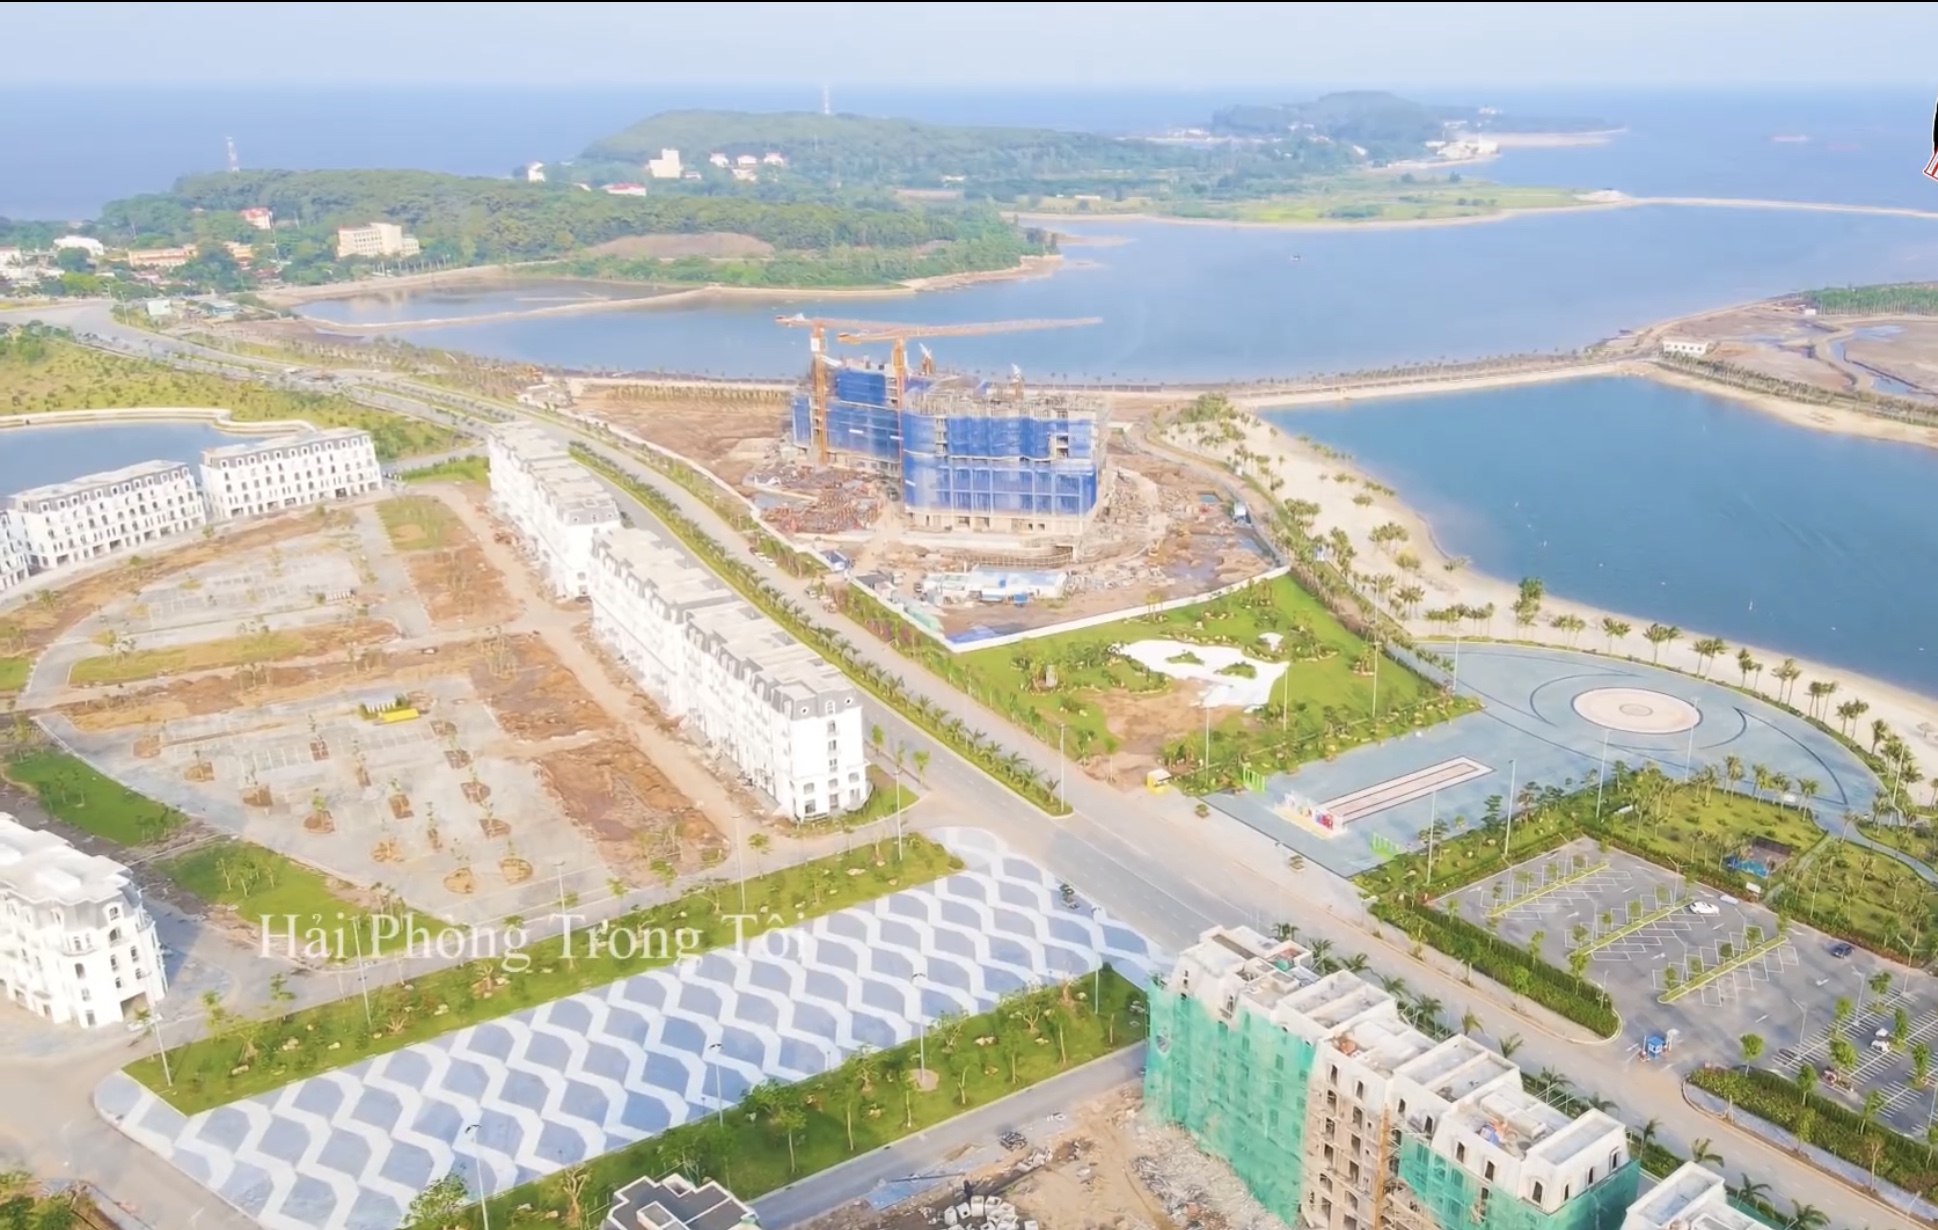 Tiến độ dự án Biệt thự chung cư Dragon Ocean Do Son Do Son Đường Vạn Hương chủ đầu tư Geleximco